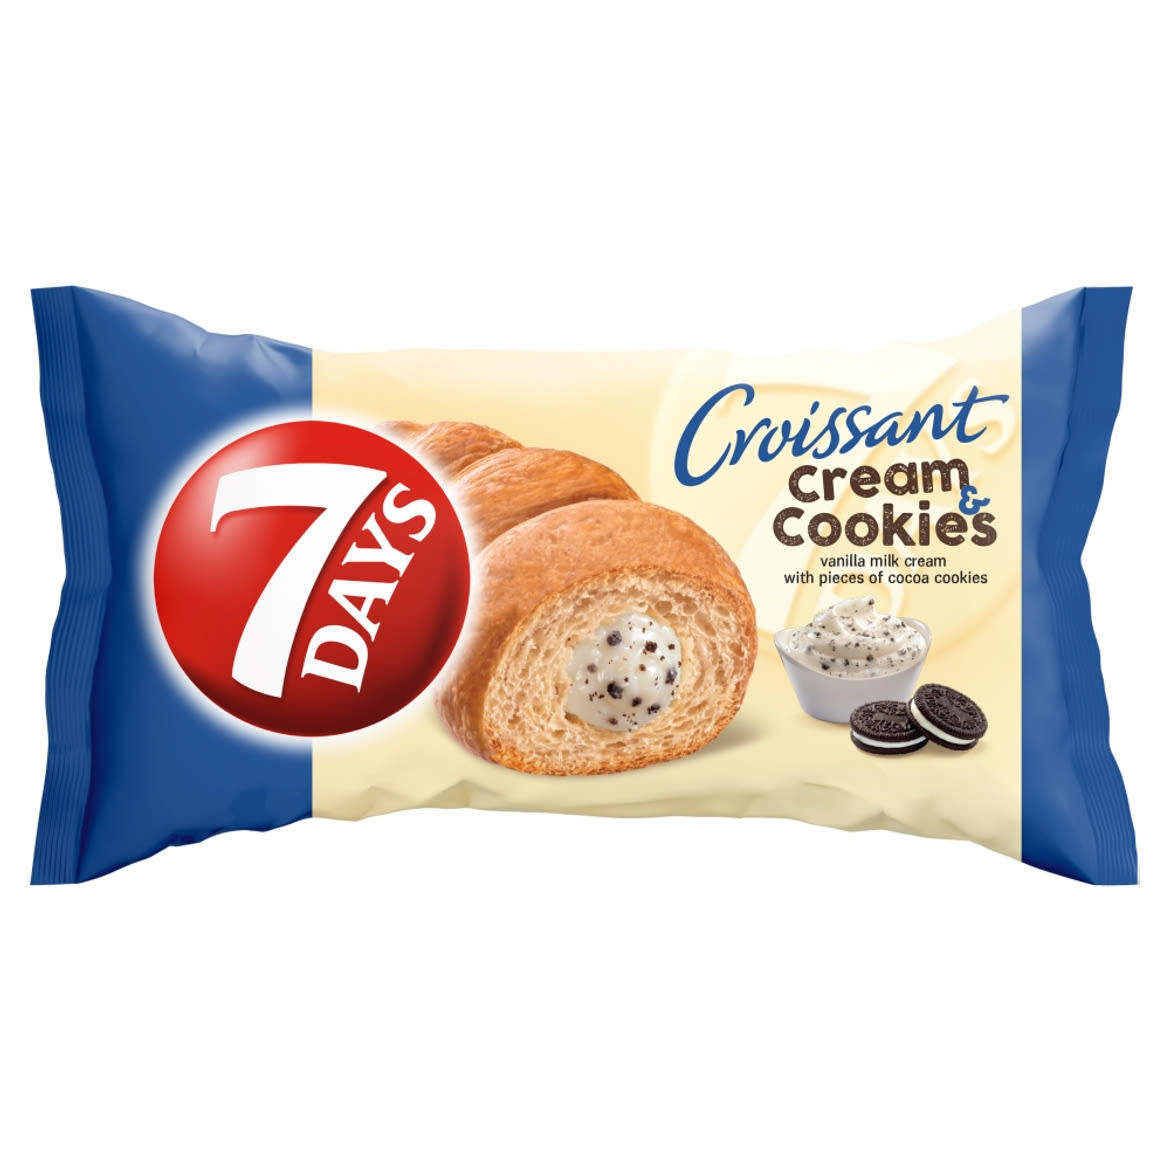 7DAYS Cream & Cookies vanília ízű tejes krémmel töltött croissant kakaós keksz darabokkal